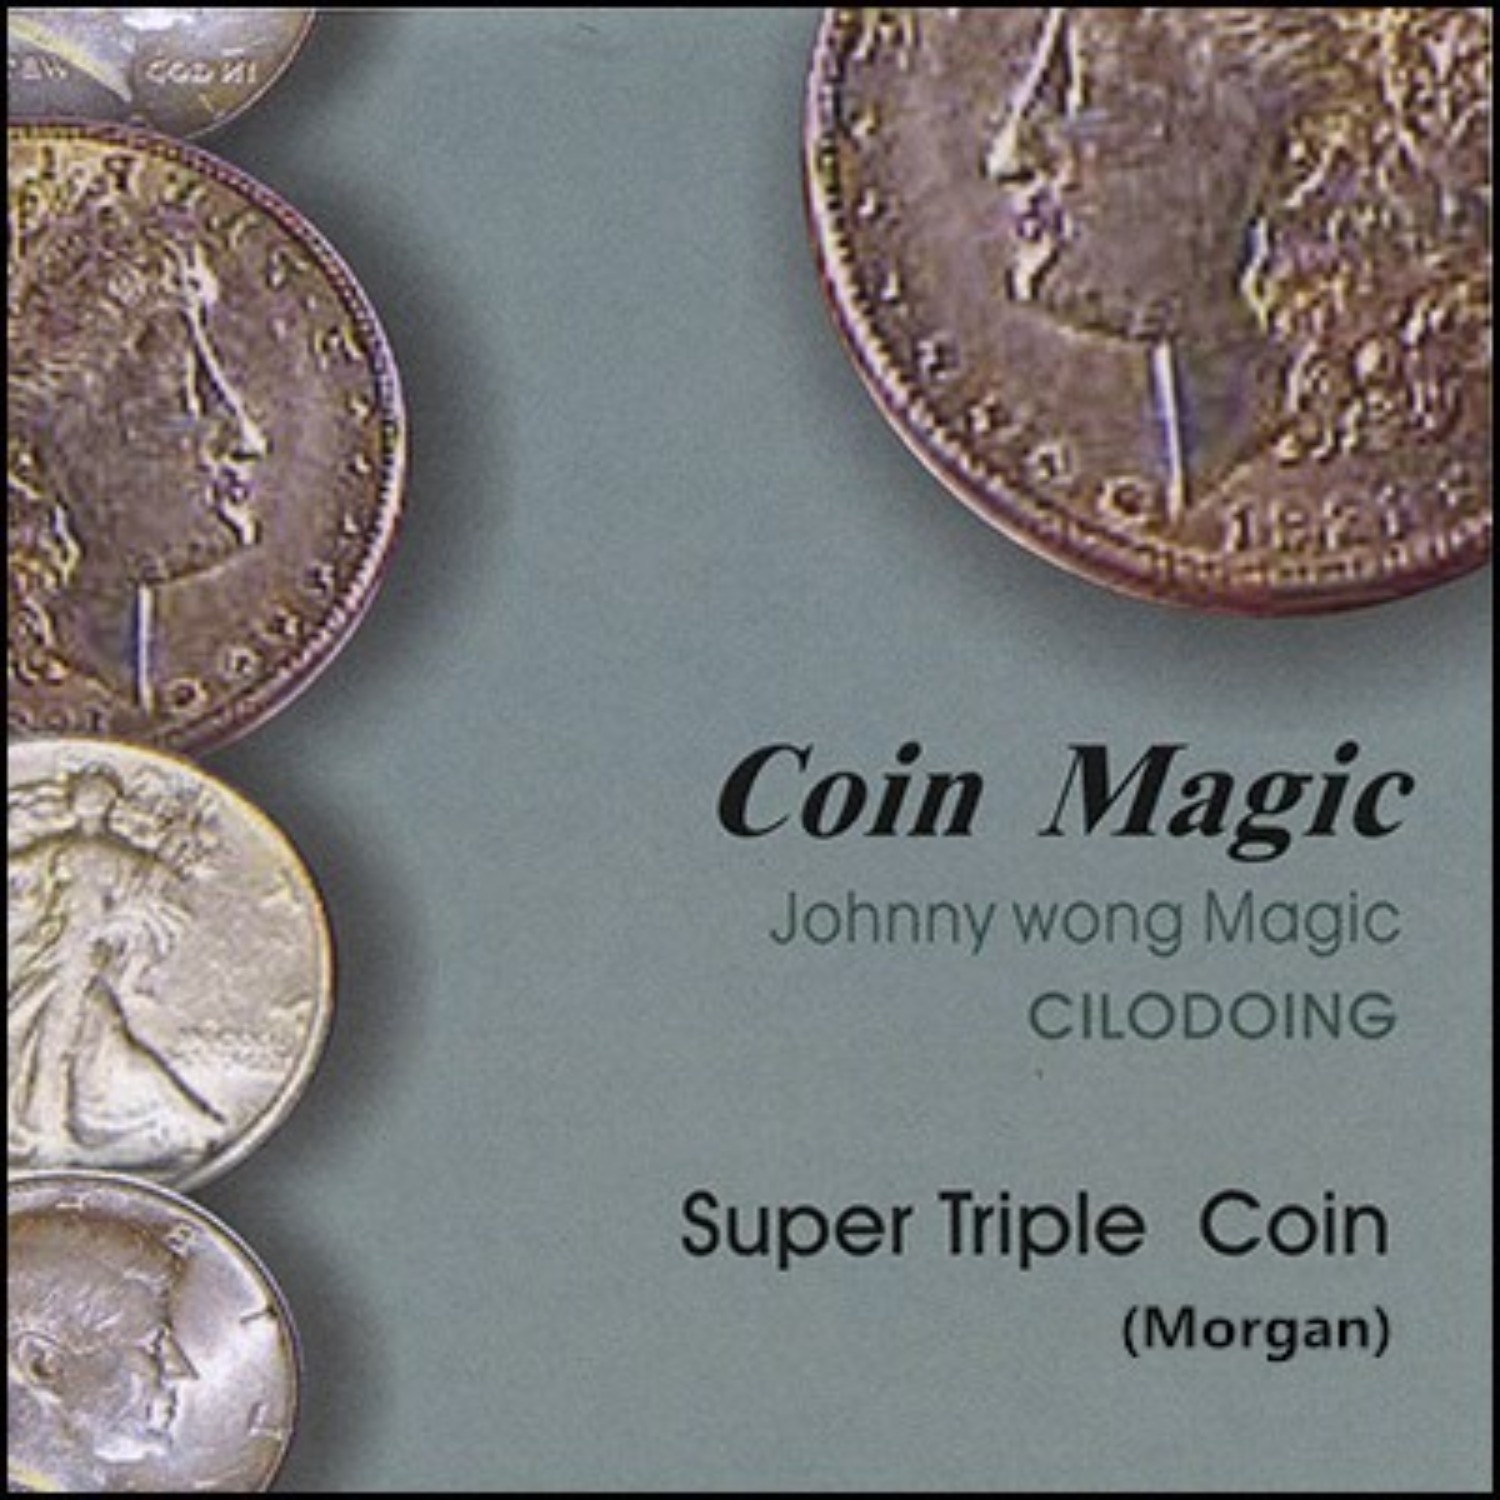 [수퍼트리플코인/모건달러]Super Triple Coin (Morgan Dollar) by Johnny Wong